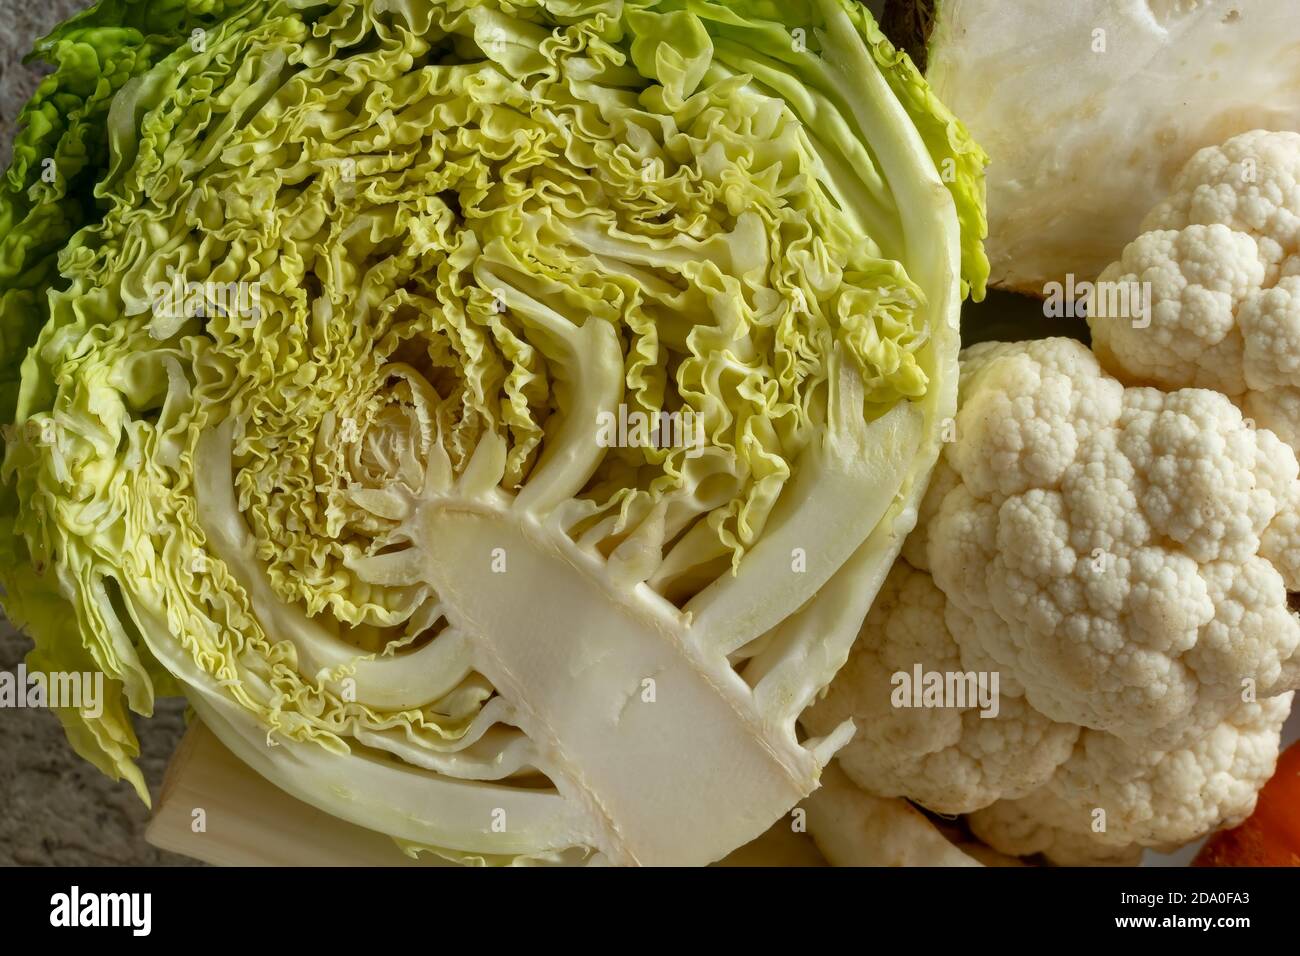 Primo piano di cavolo di Savoia, cavolfiore e altri ingredienti per la preparazione di un brodo vegetale o di una zuppa Foto Stock